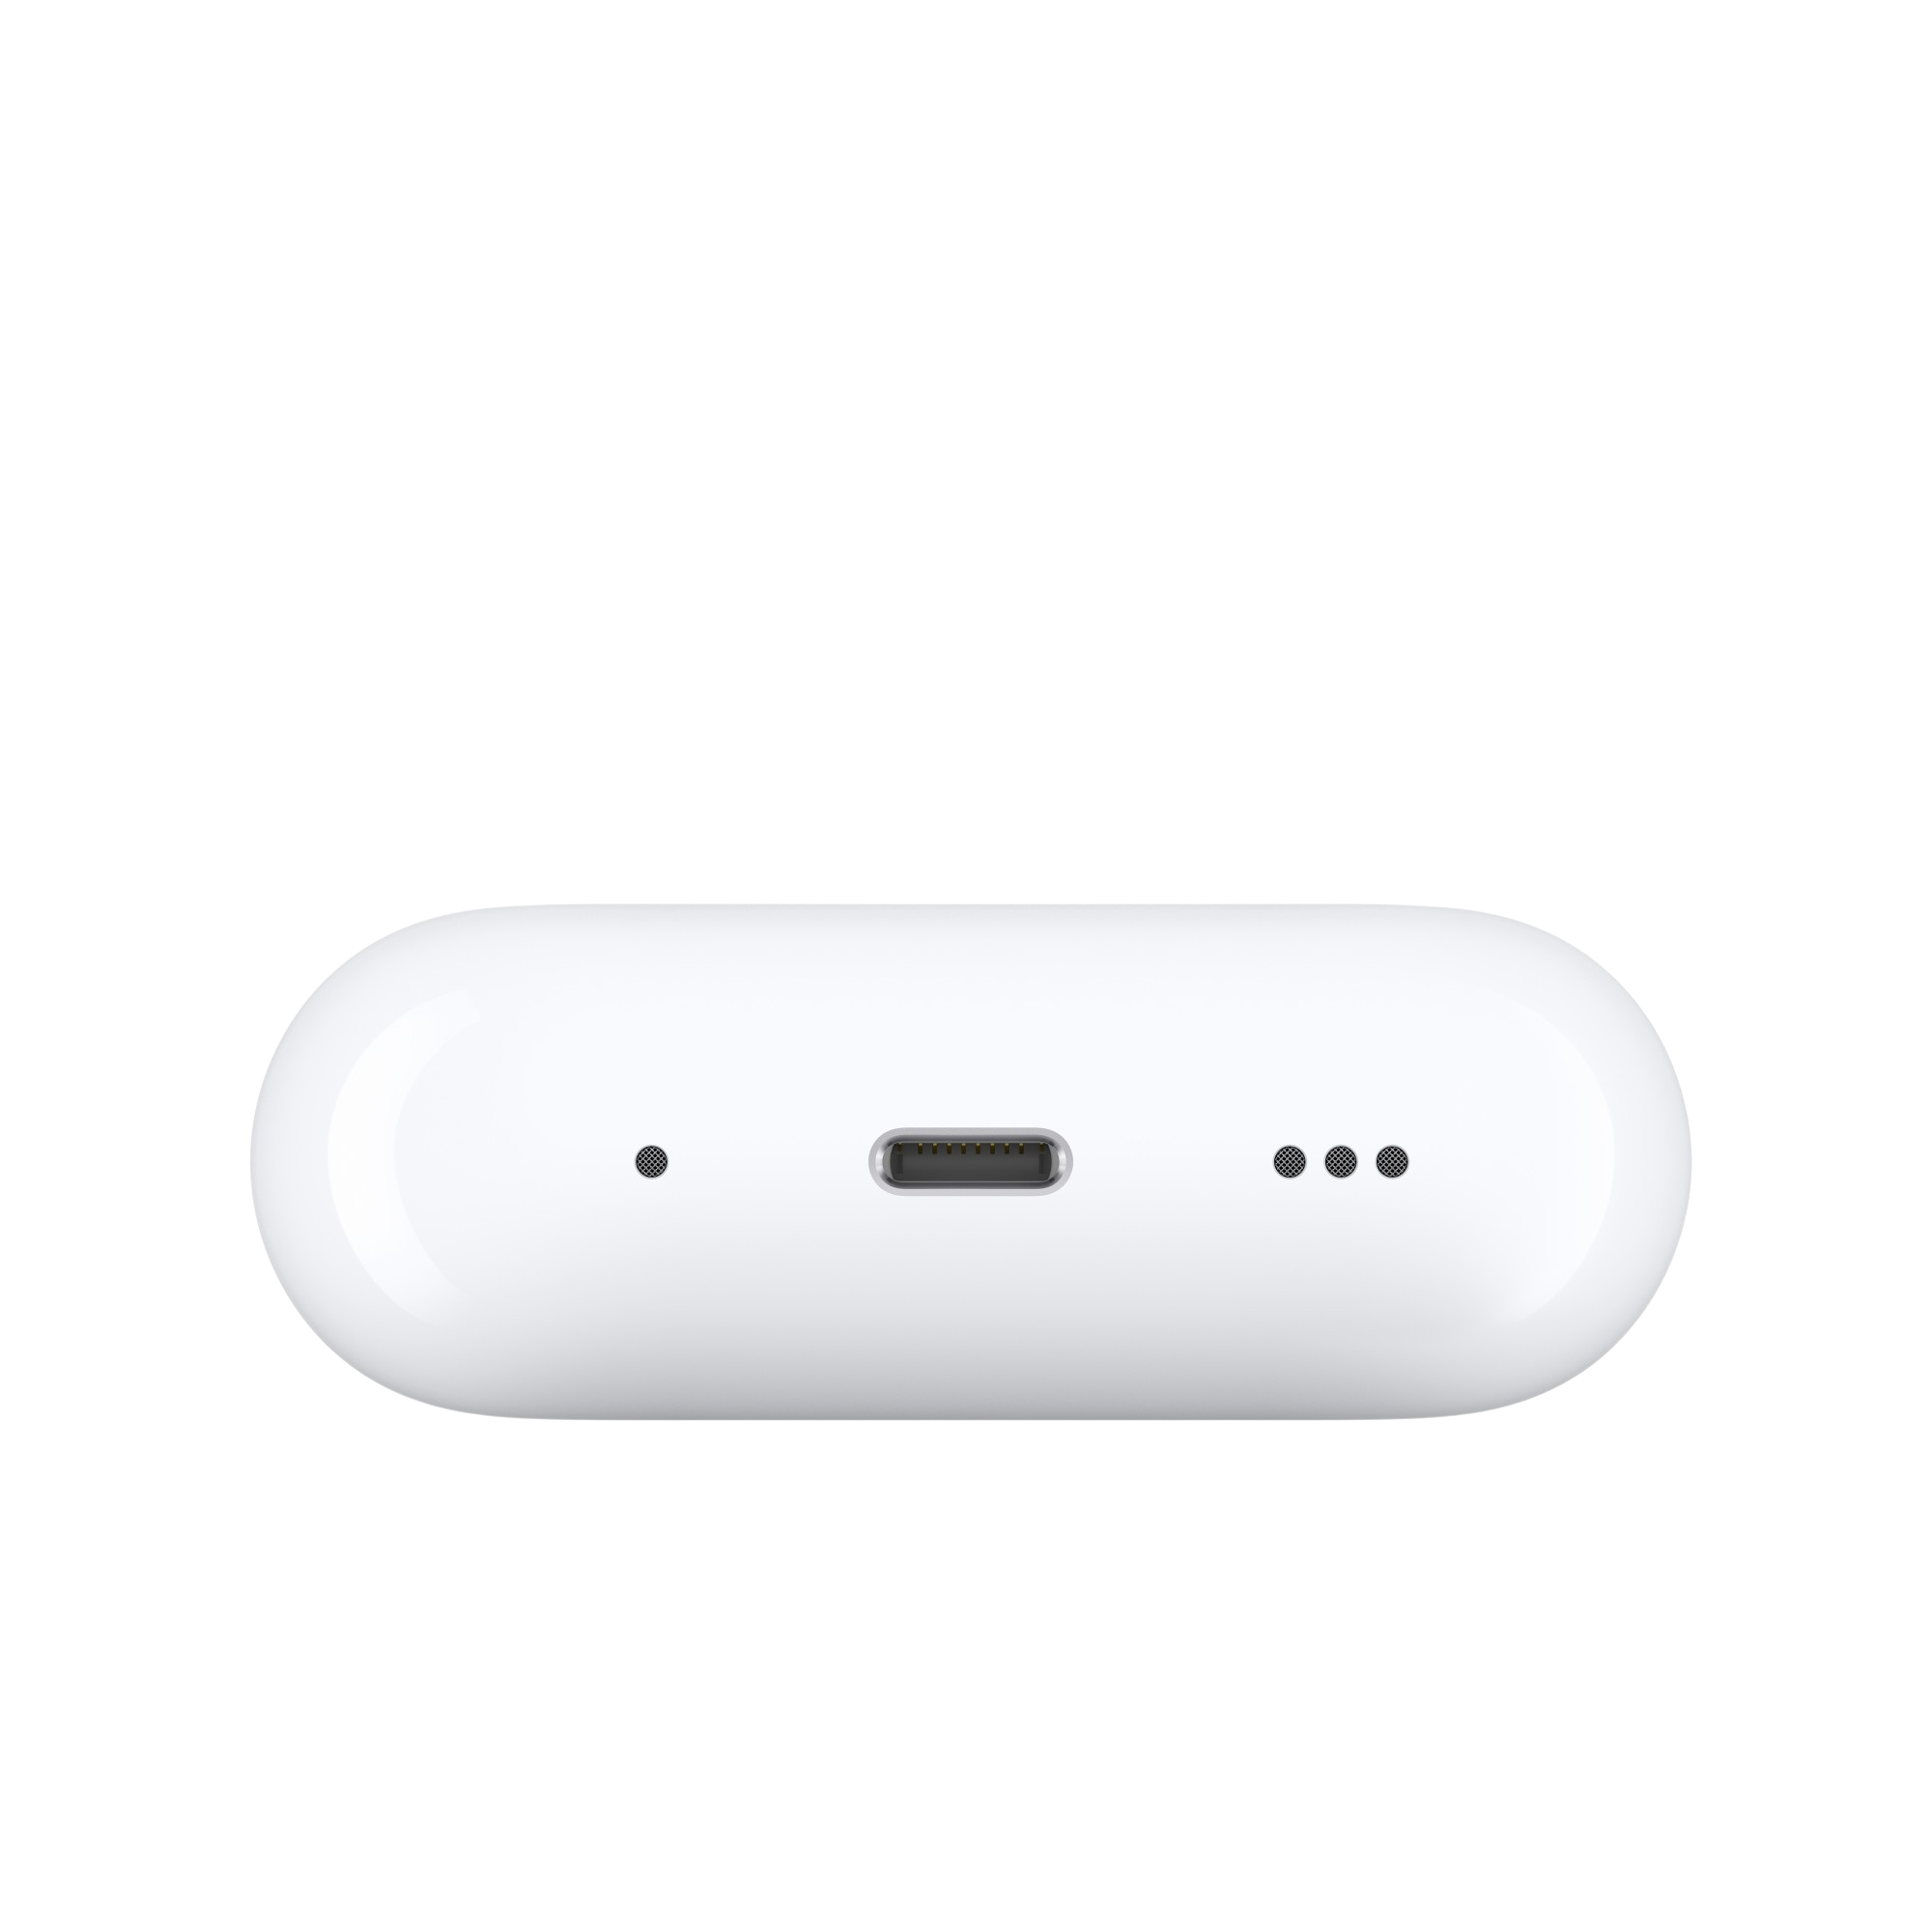 Culpable cafetería suficiente Alquila Apple Airpods Pro 2 In-ear Bluetooth Headphones desde 13,90 € al mes